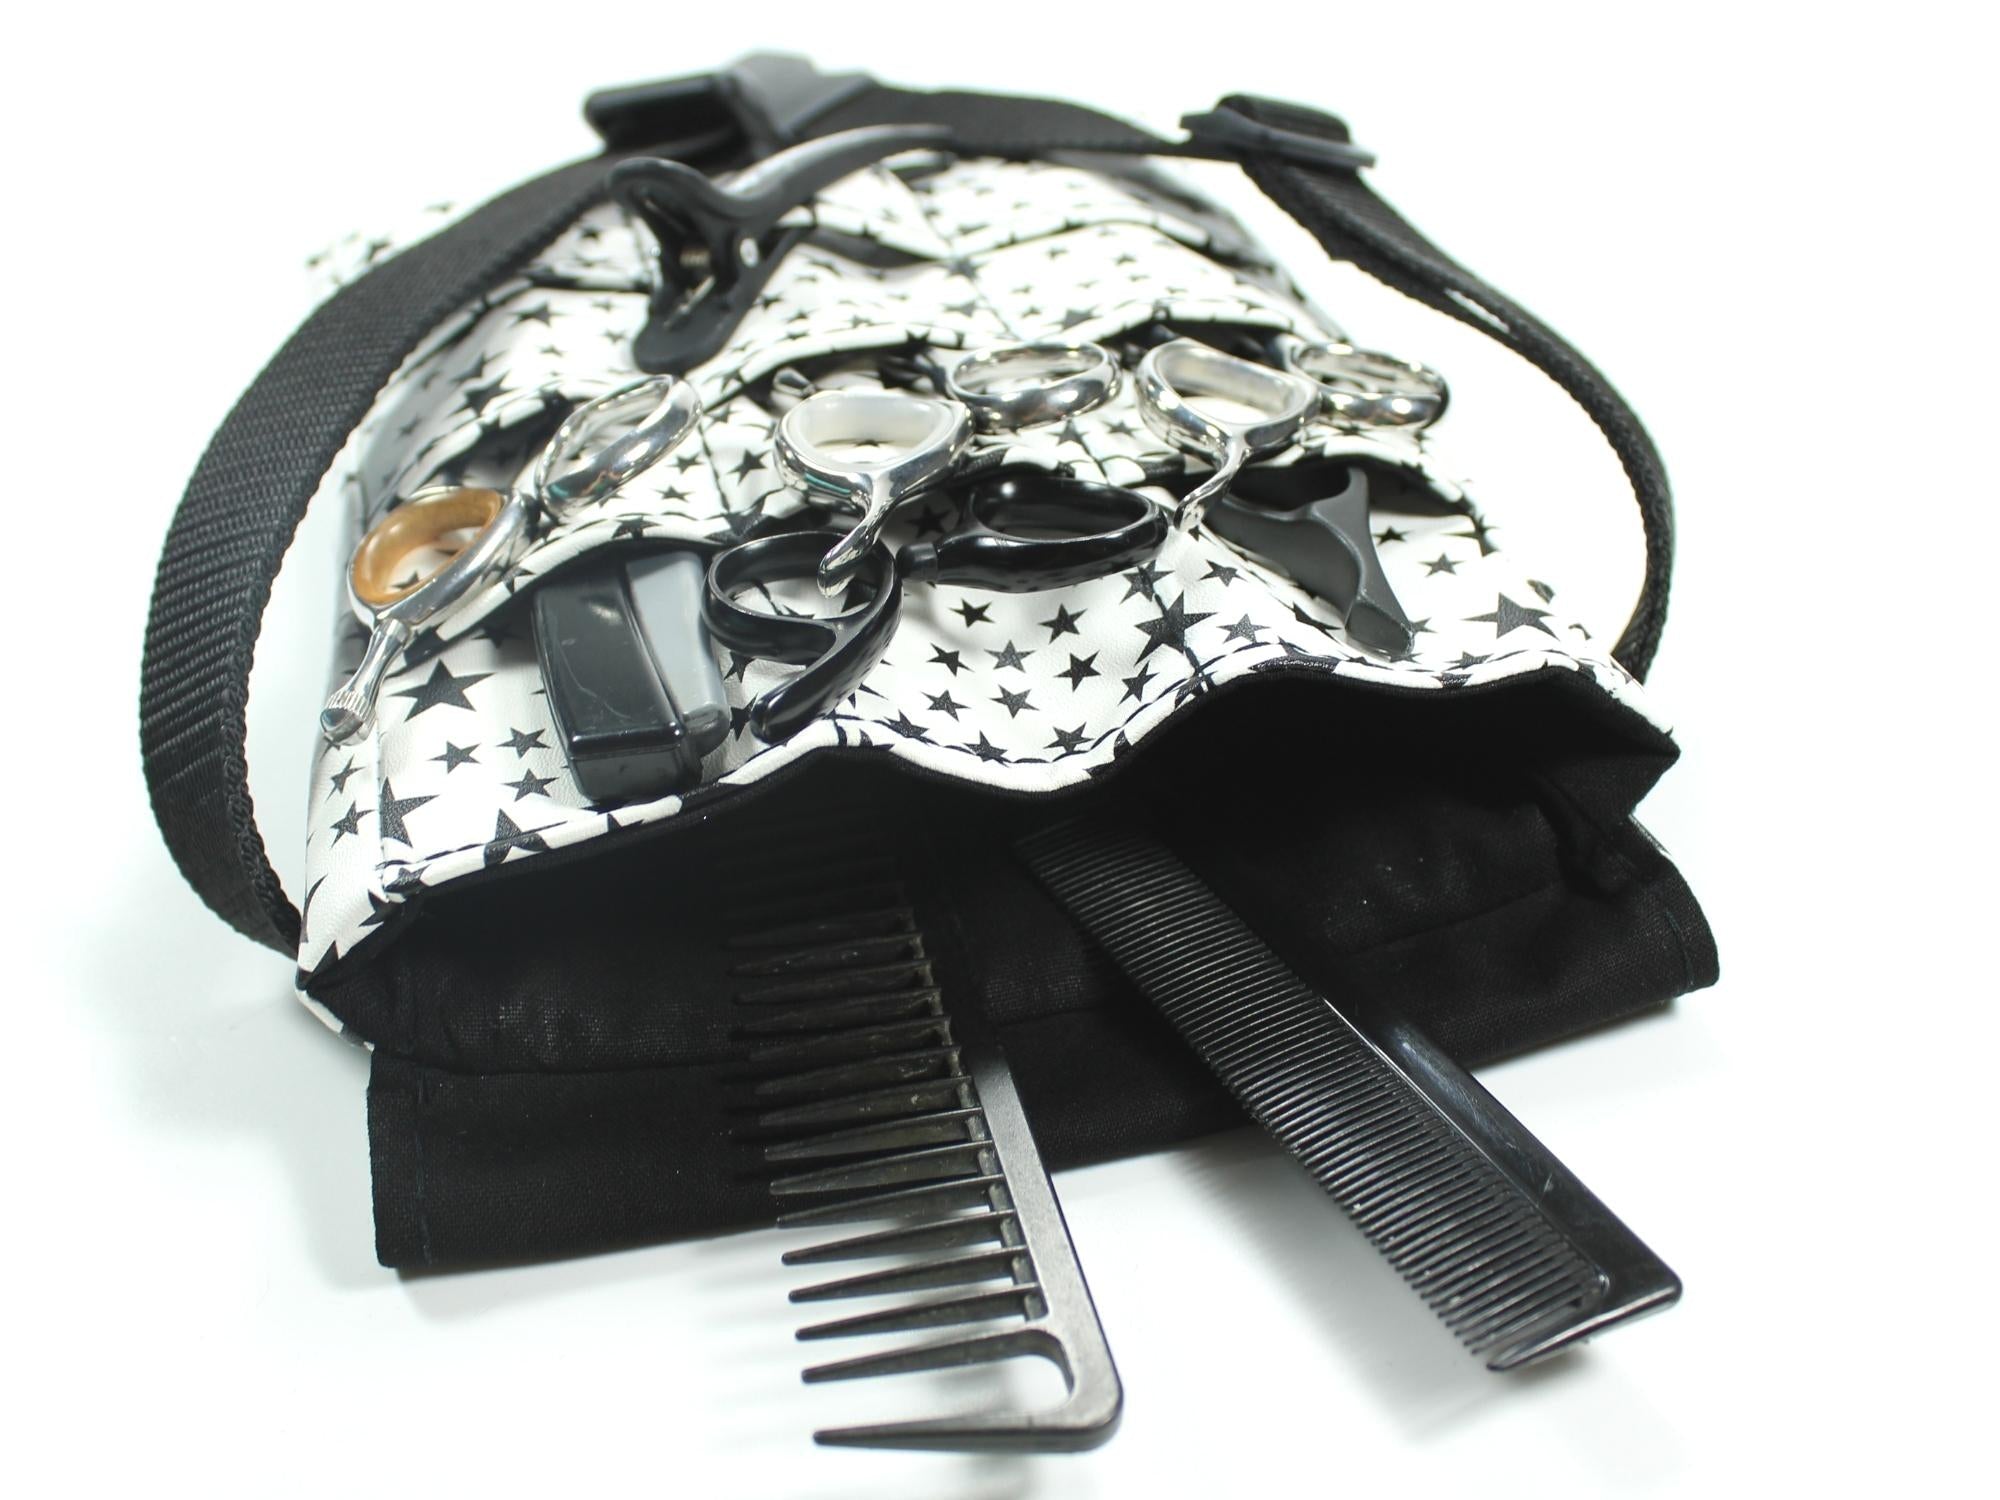 Kunstleder Friseur Werkzeugtasche in weiß mit schwarzen Sternen